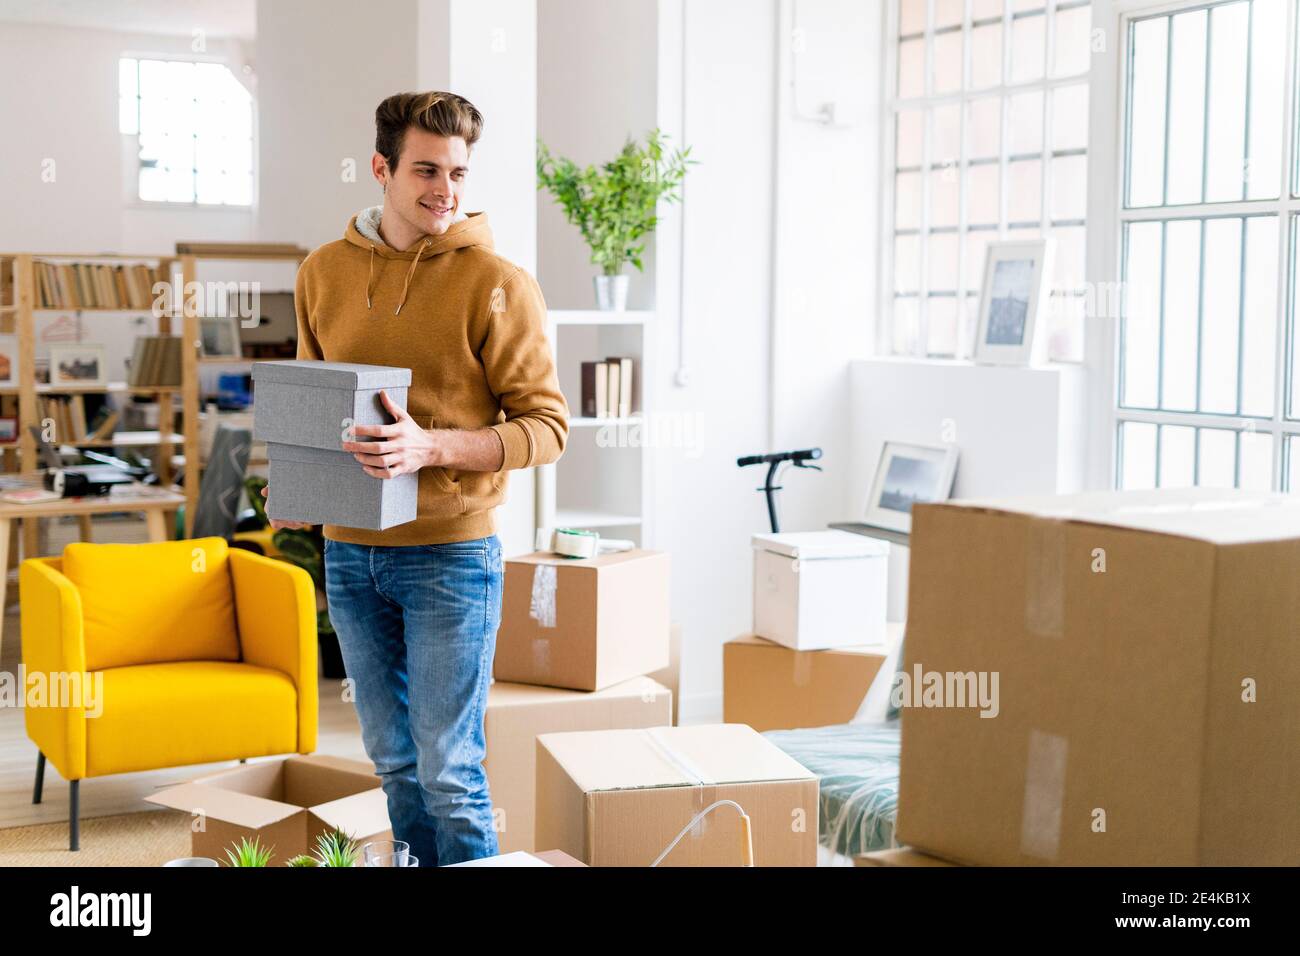 Lächelnder junger Mann, der Boxen hält, während er im neuen Loft steht Wohnung Stockfoto